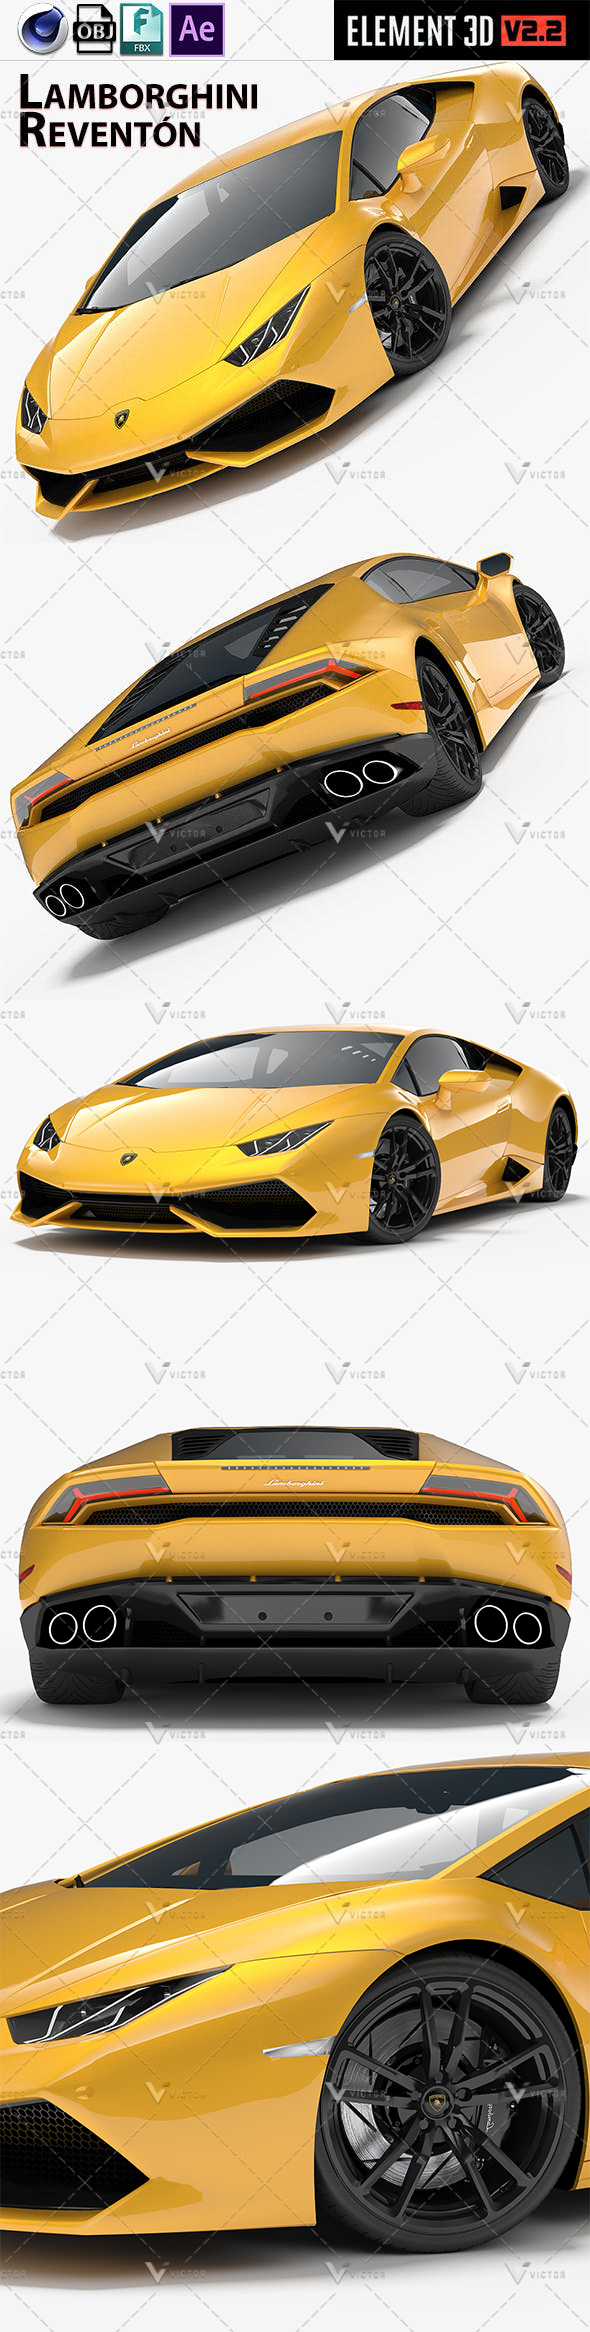 Lamborghini Reventon Reventon - 3Docean 24932849